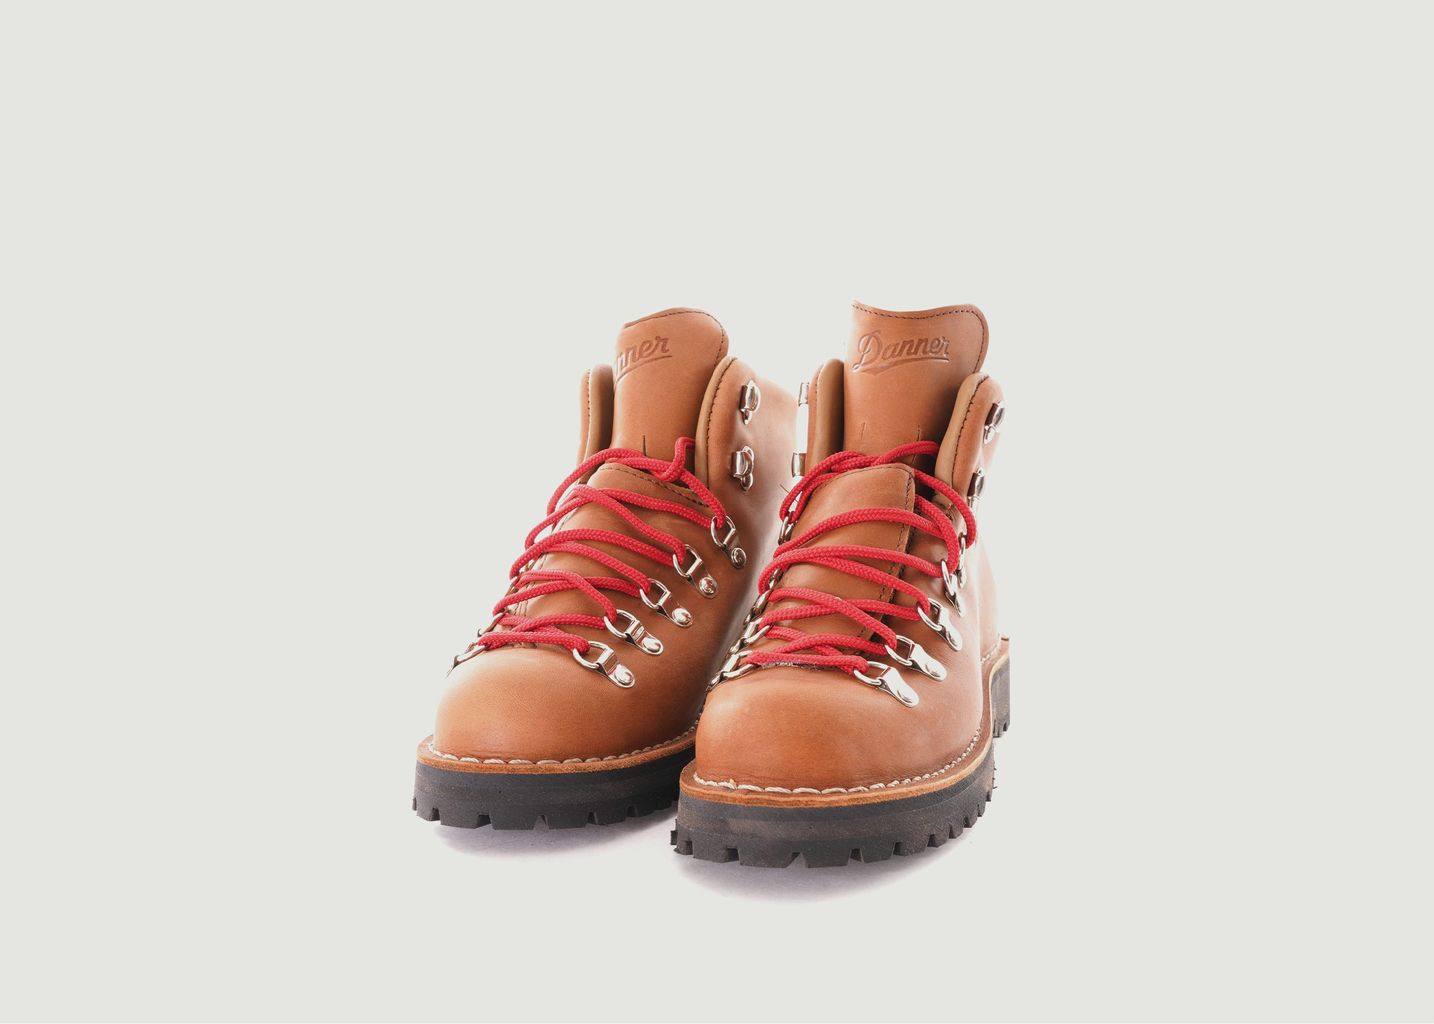 Boots en cuir Mountain Light Clovis - Danner